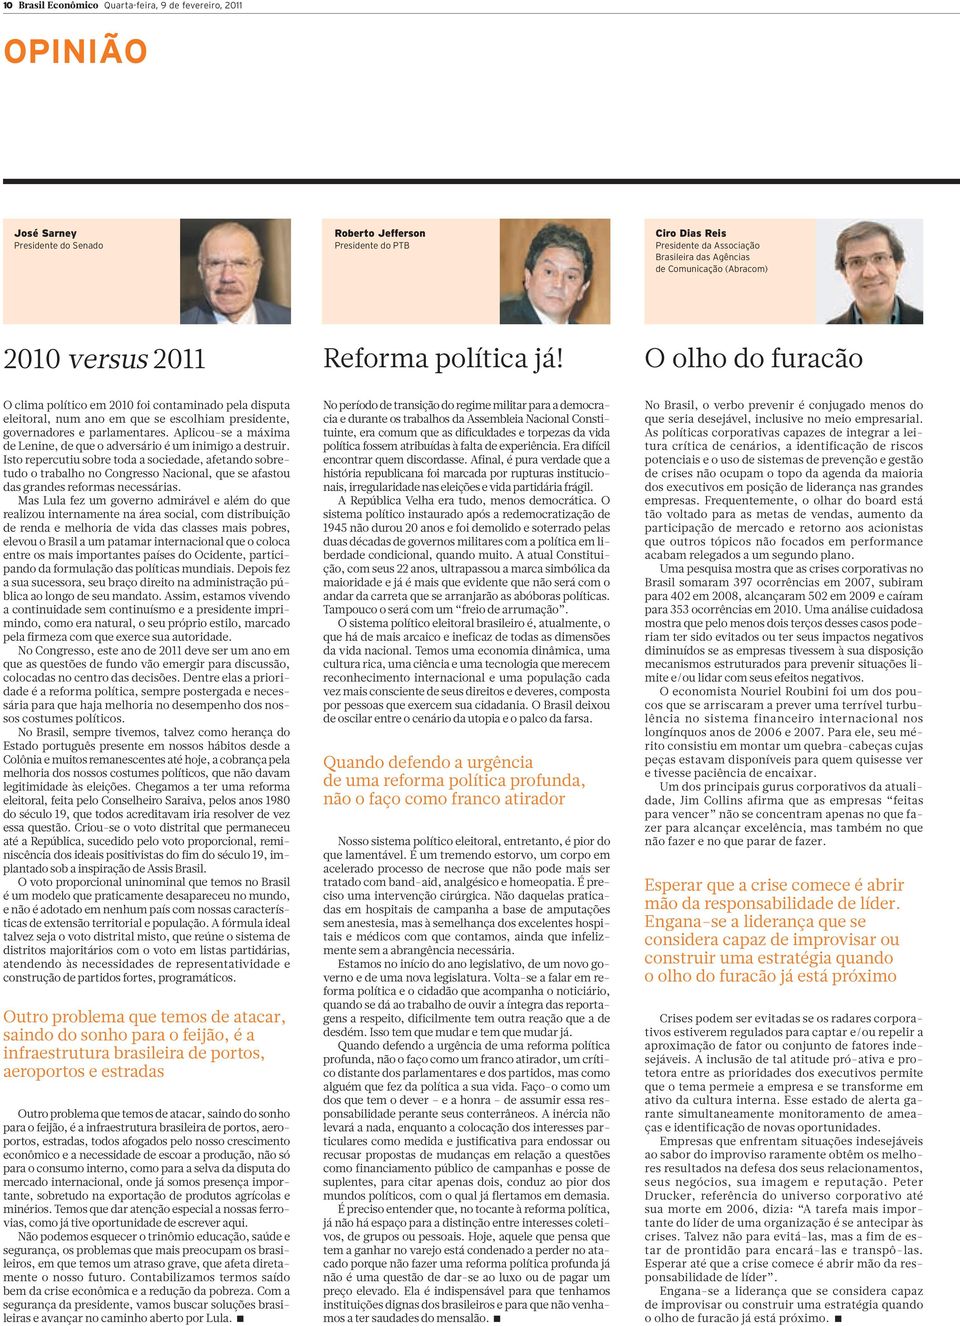 Oolhodofuracão O clima político em 2010 foi contaminado pela disputa eleitoral, num ano em que se escolhiam presidente, governadores e parlamentares.